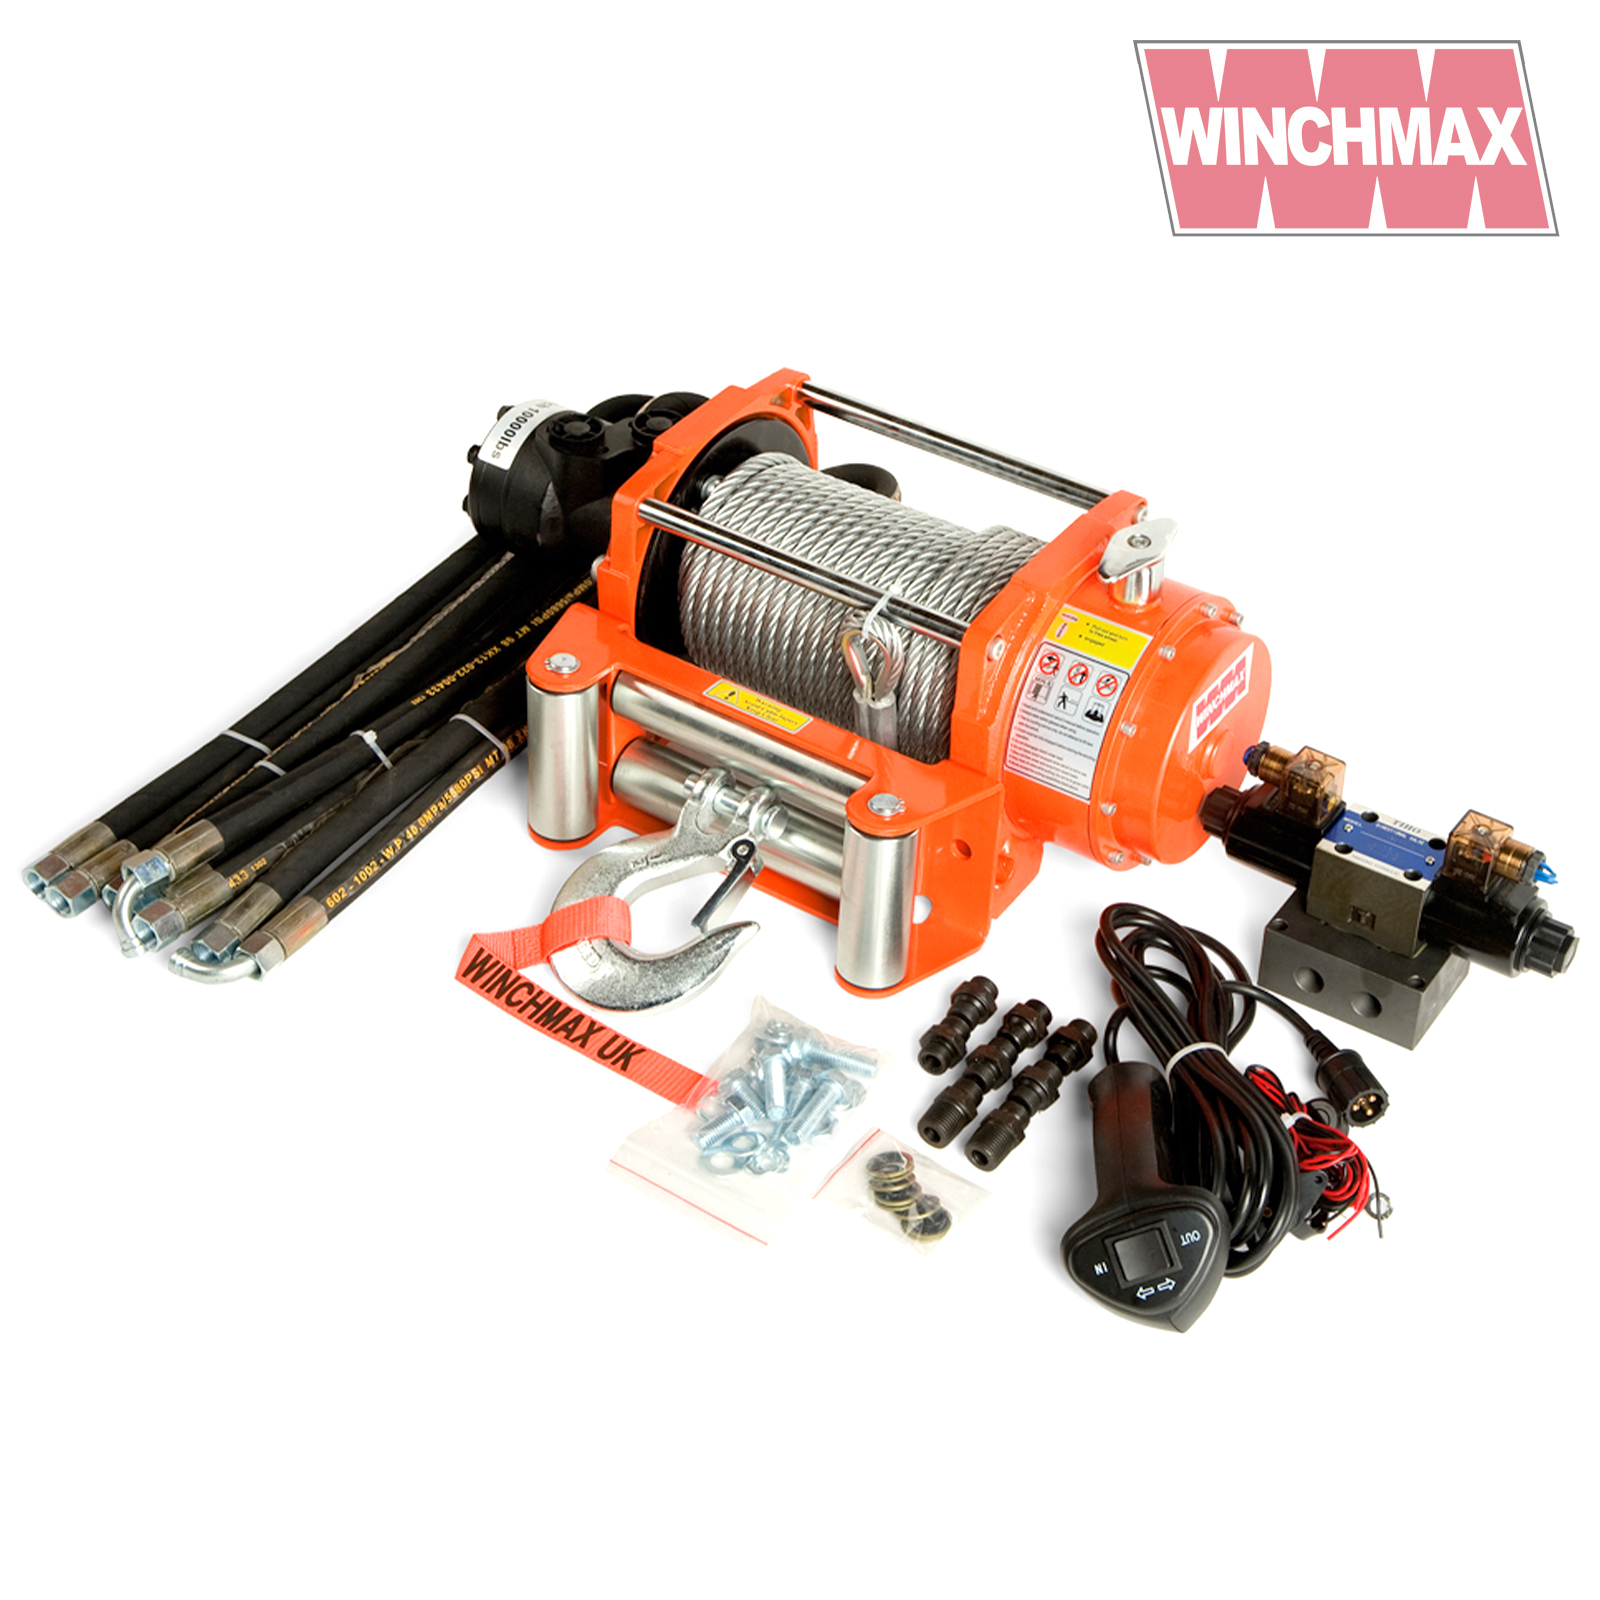 Winchmax 10000lb Hydraulic Winch